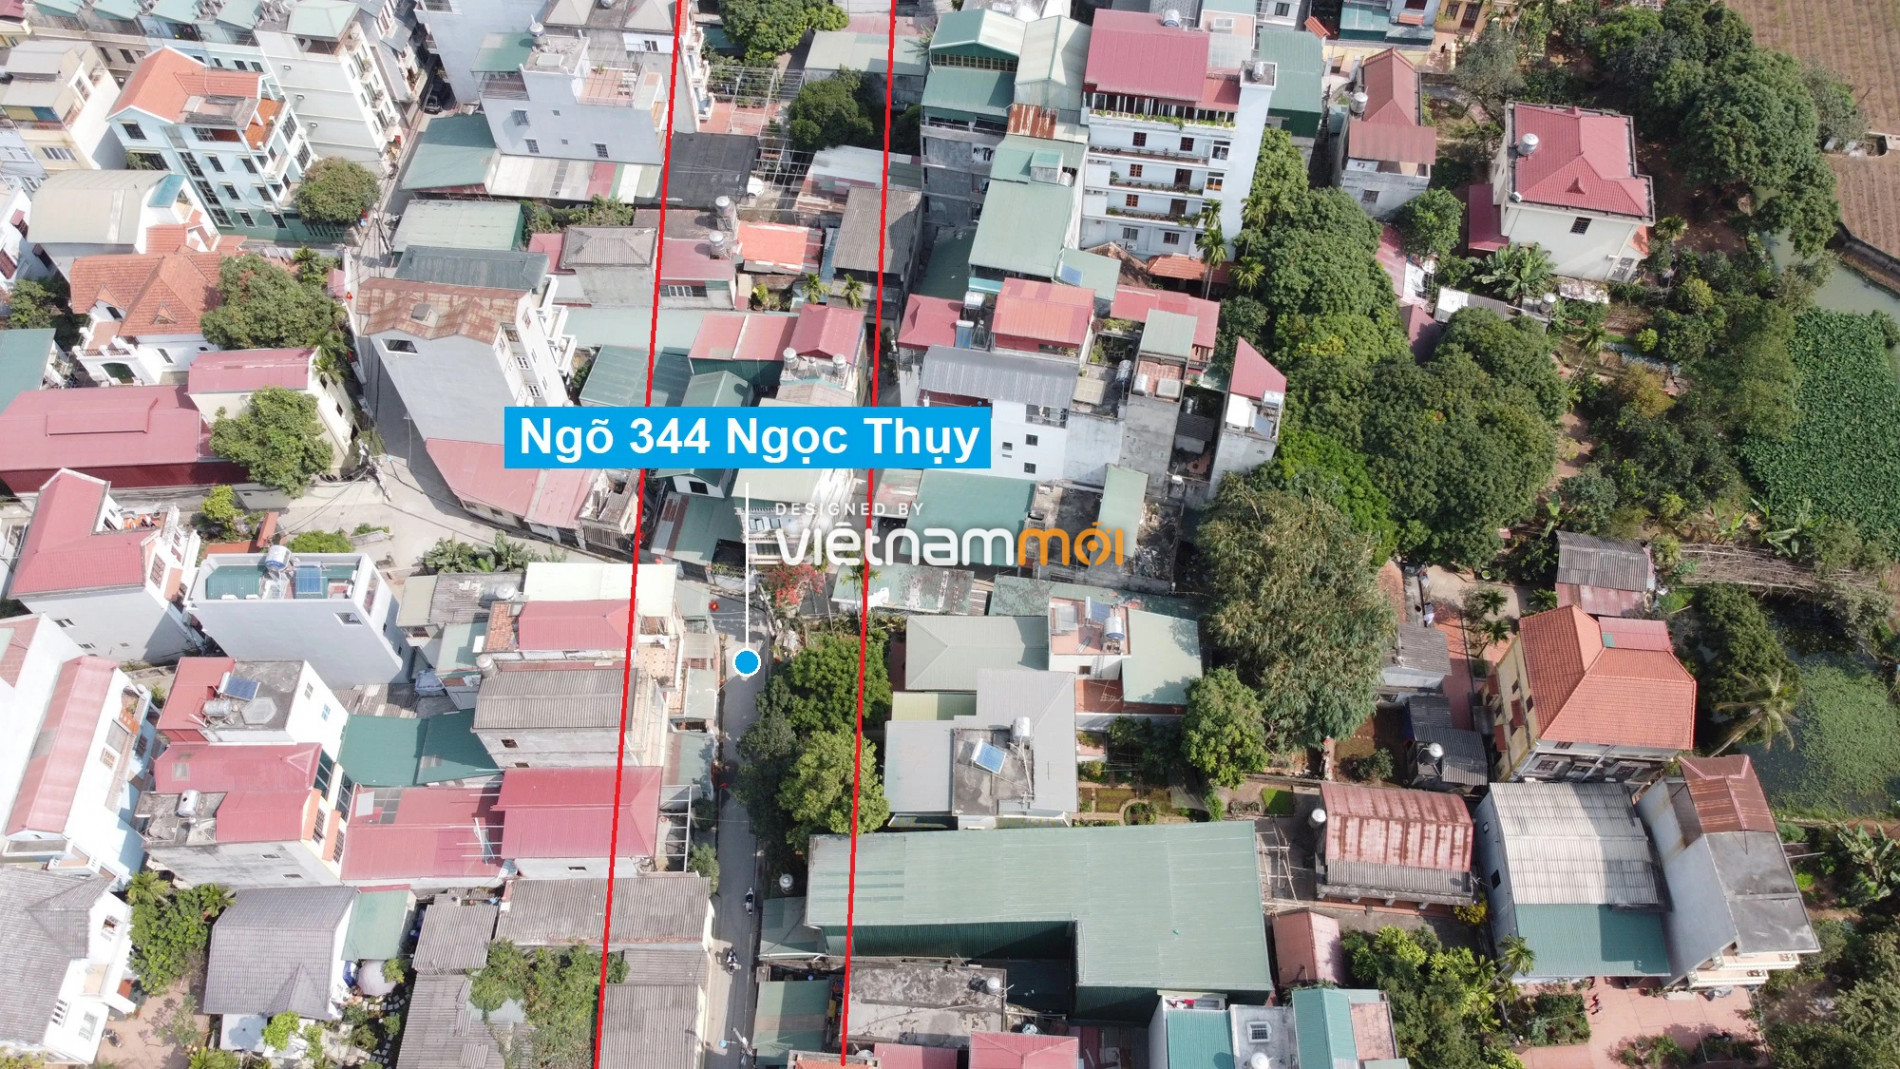 Những khu đất sắp thu hồi để mở đường ở phường Ngọc Thụy, Long Biên, Hà Nội (phần 3) - Ảnh 4.